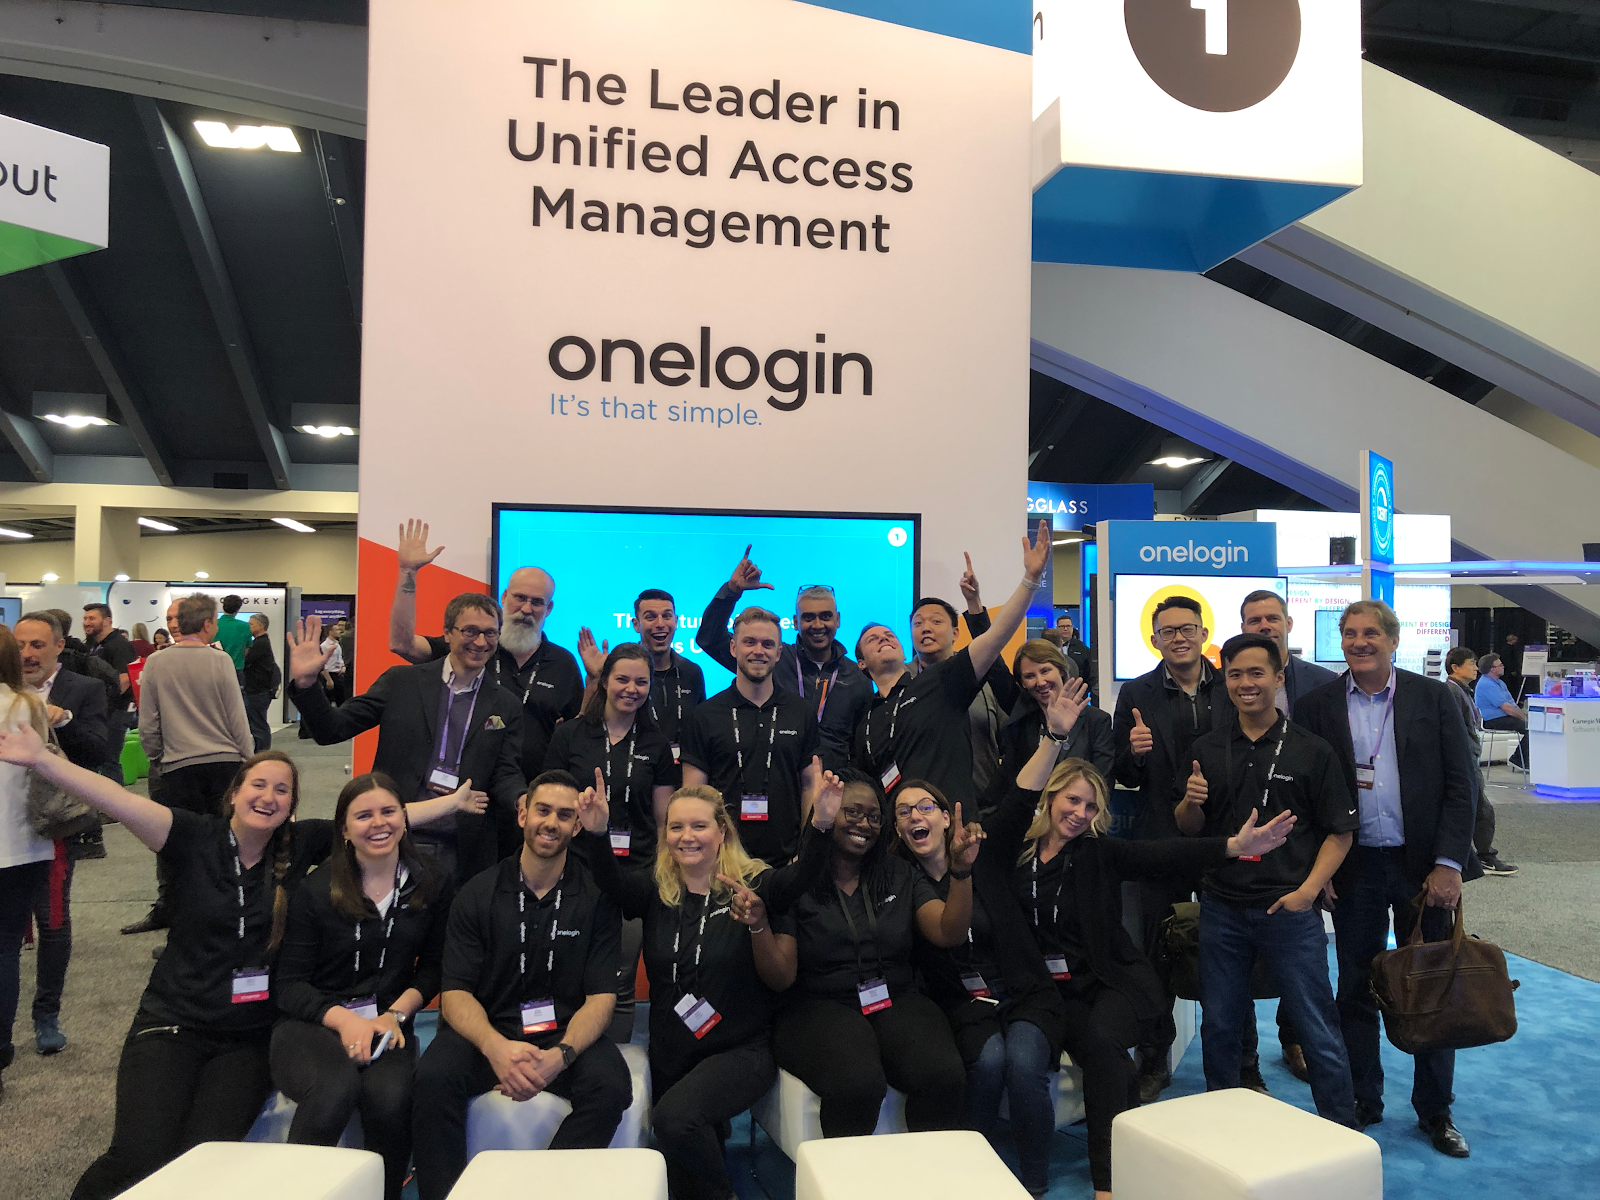 RSA カンファレンス 2019 での OneLogin 出展チーム